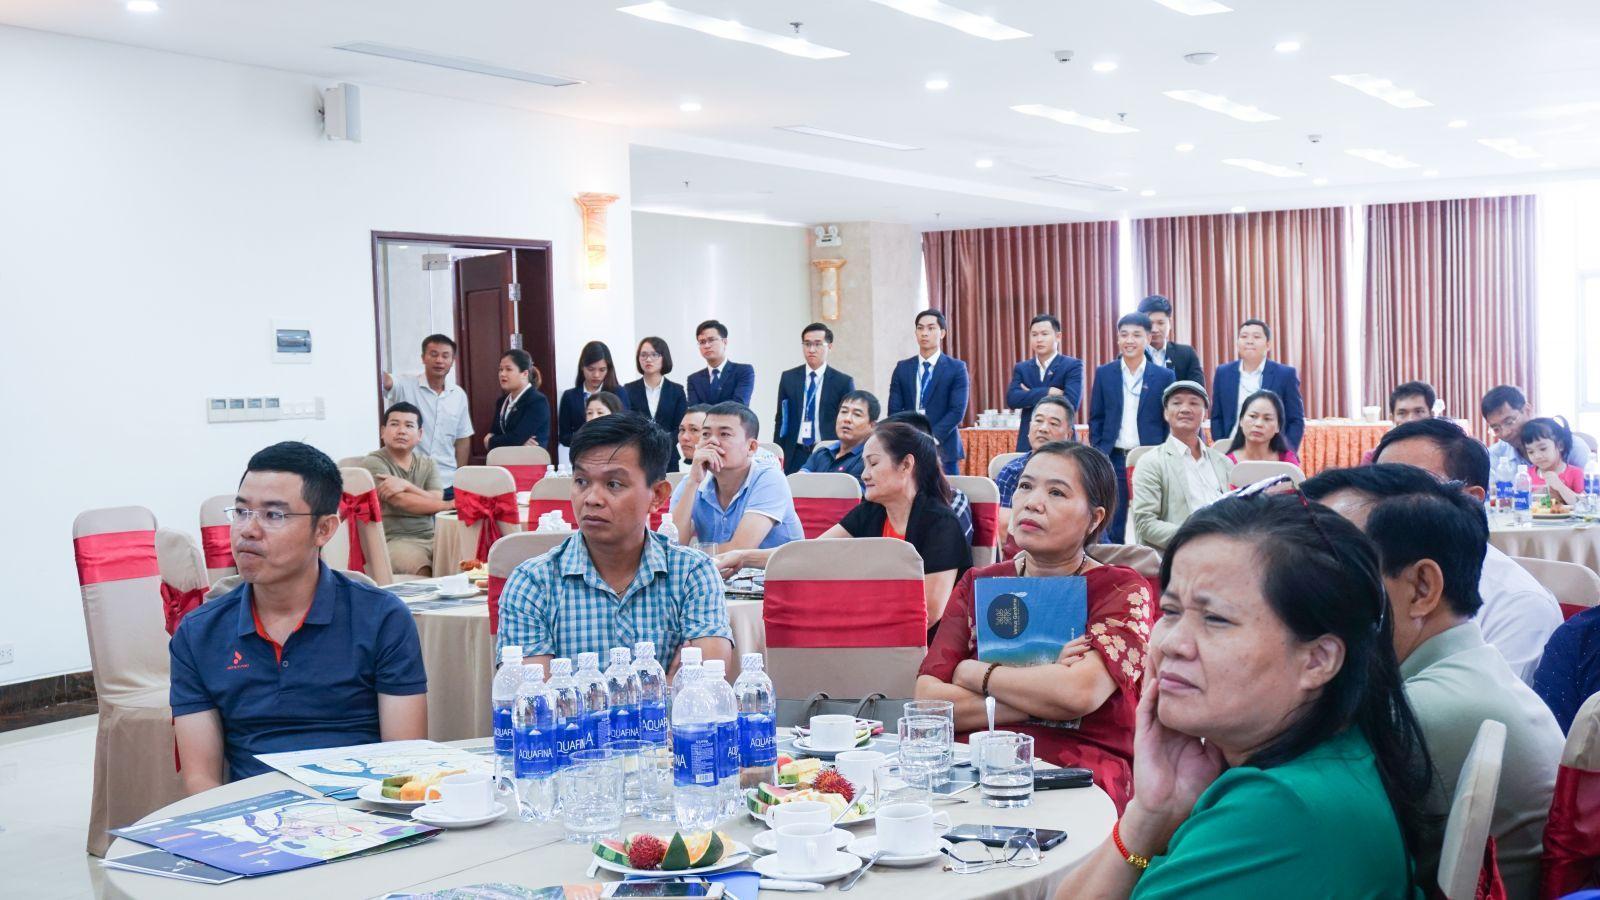 BẤT ĐỘNG SẢN CUỐI NĂM 2019 – ĐẦU TƯ VÀO ĐÂU ĐỂ SINH LỜI? - Viet Nam Smart City